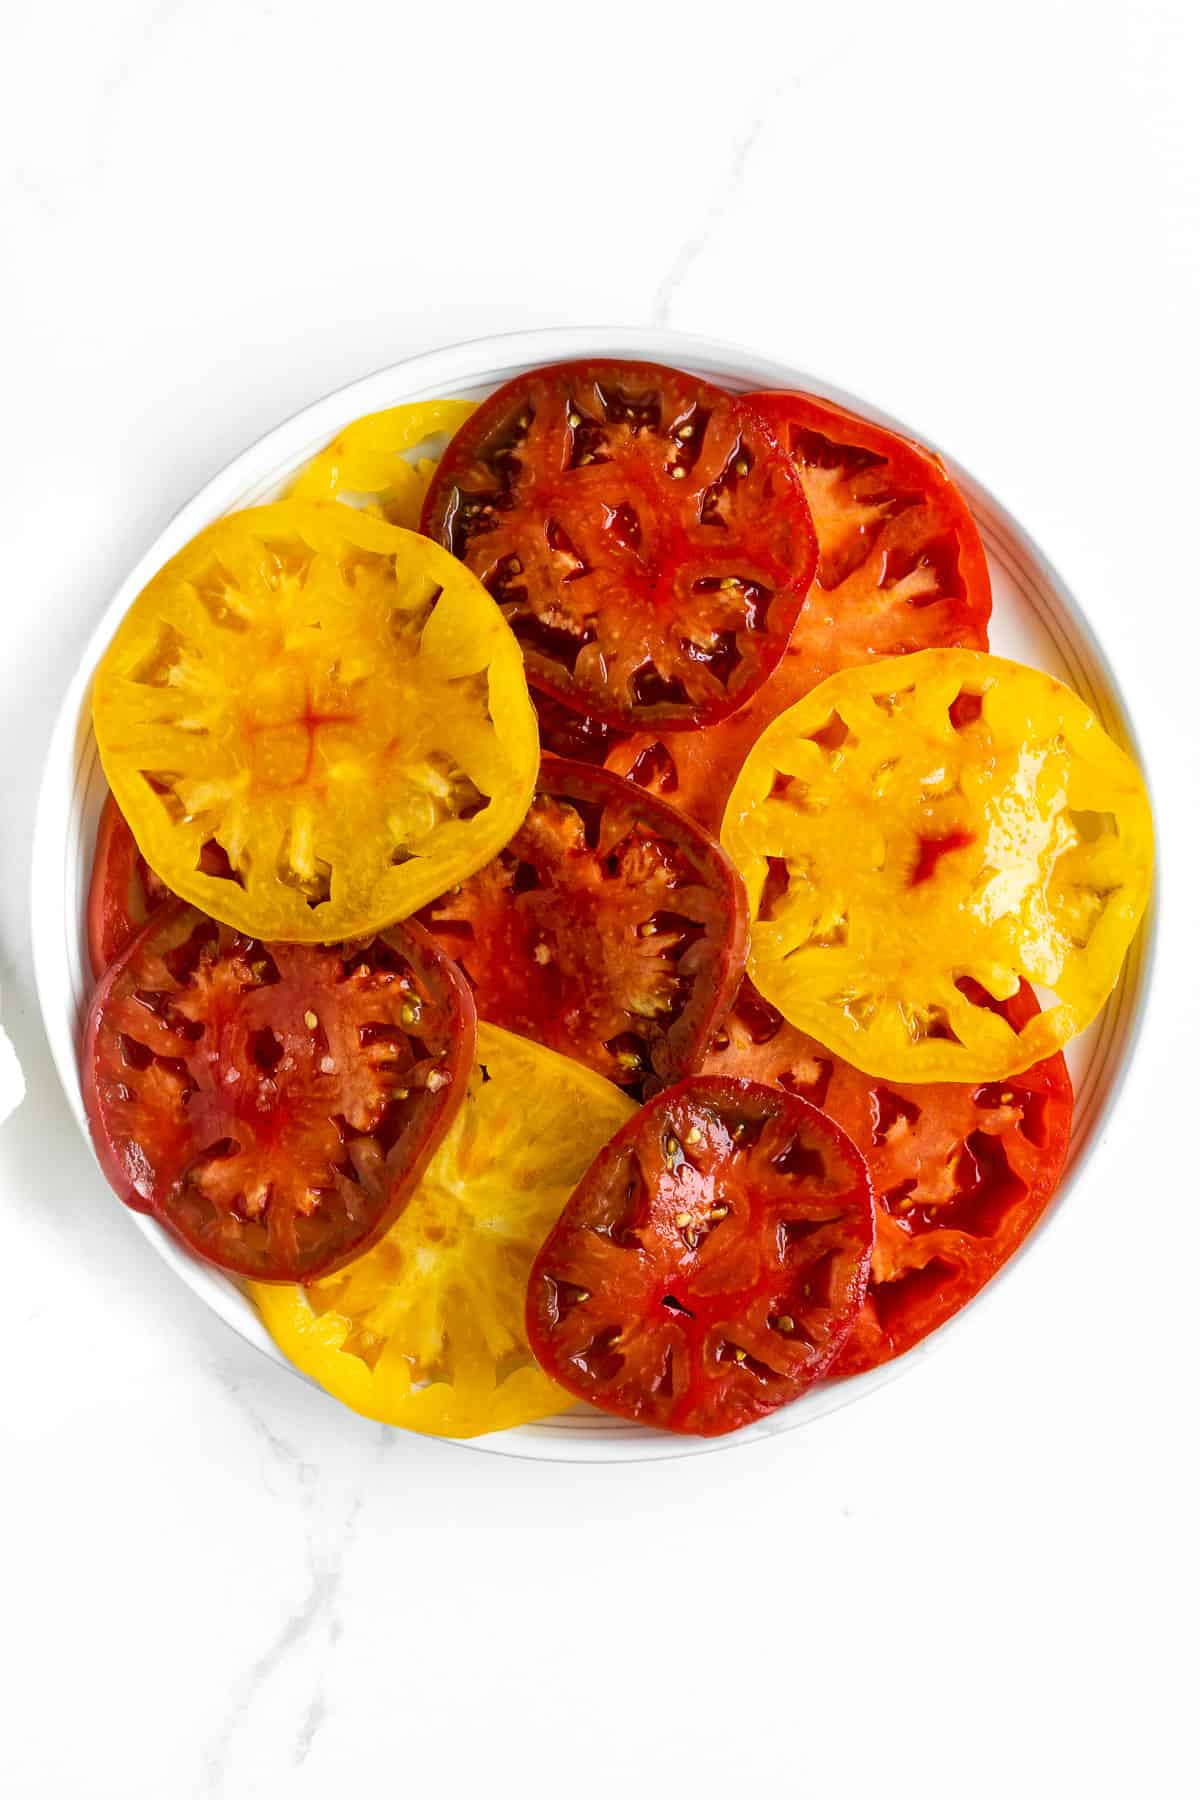 Sliced tomatoes on platter.